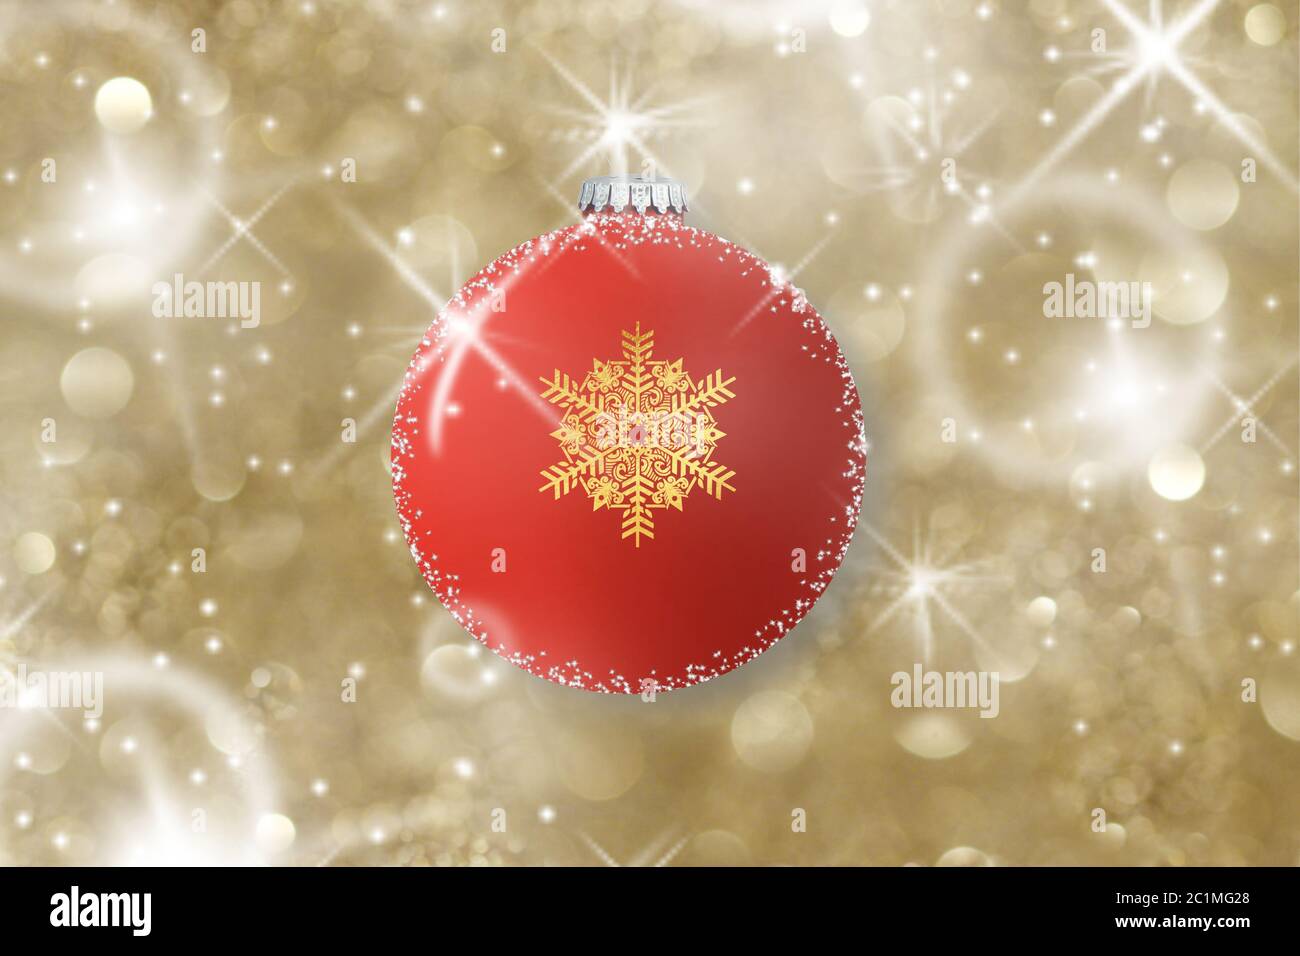 Dekoration mit einer weihnachtsbaumkugel Stockfoto